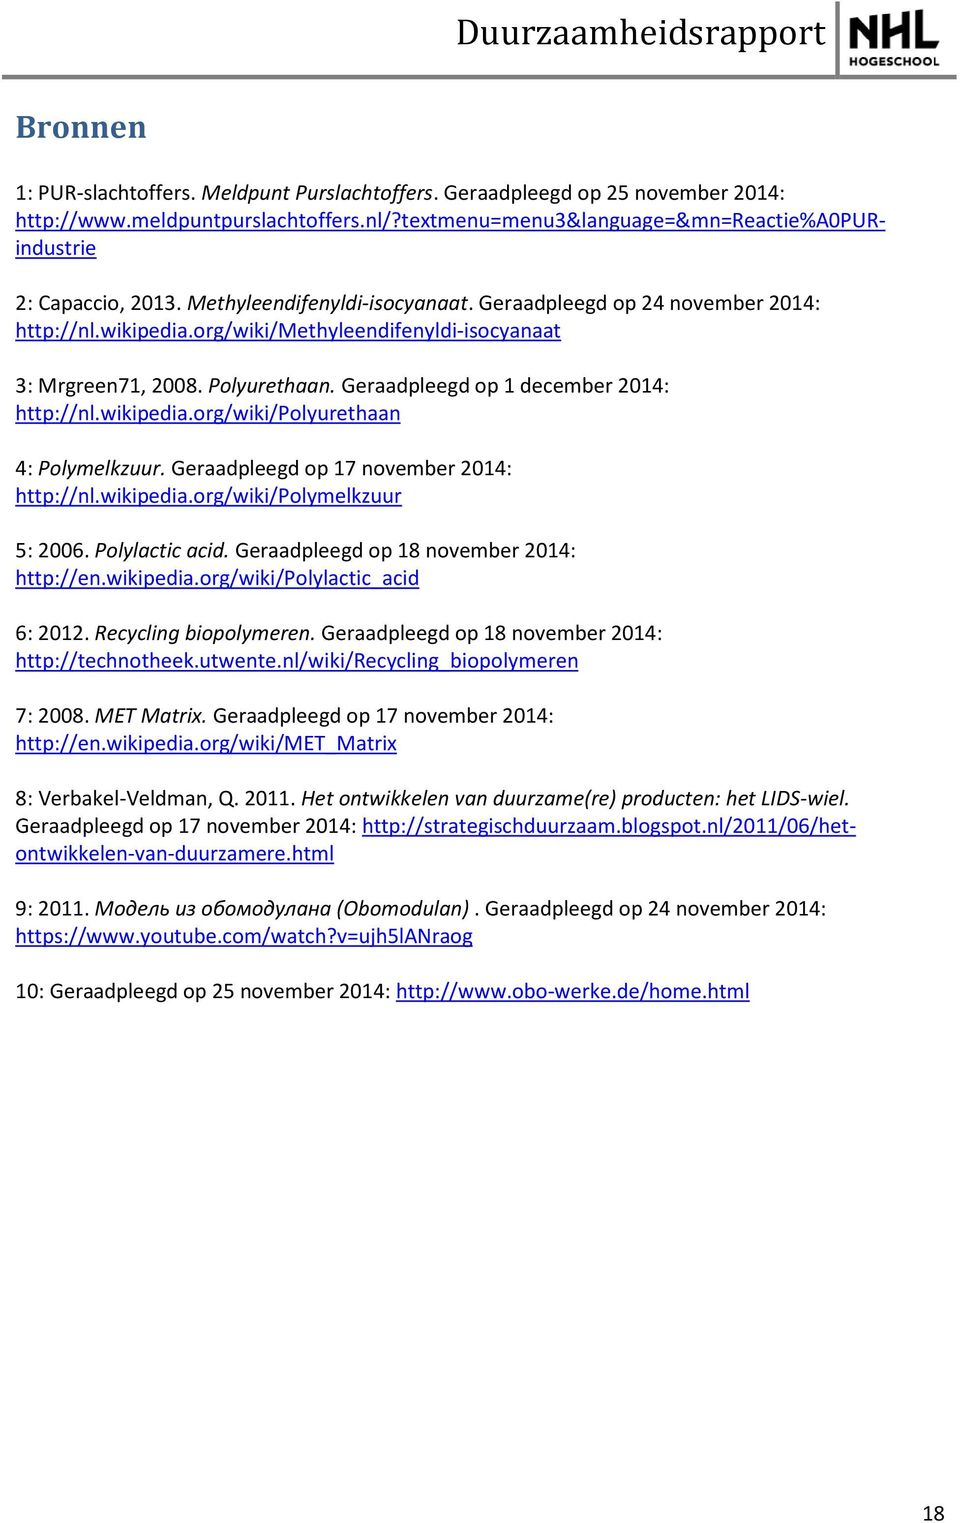 Geraadpleegd op 1 december 2014: http://nl.wikipedia.org/wiki/polyurethaan 4: Polymelkzuur. Geraadpleegd op 17 november 2014: http://nl.wikipedia.org/wiki/polymelkzuur 5: 2006. Polylactic acid.